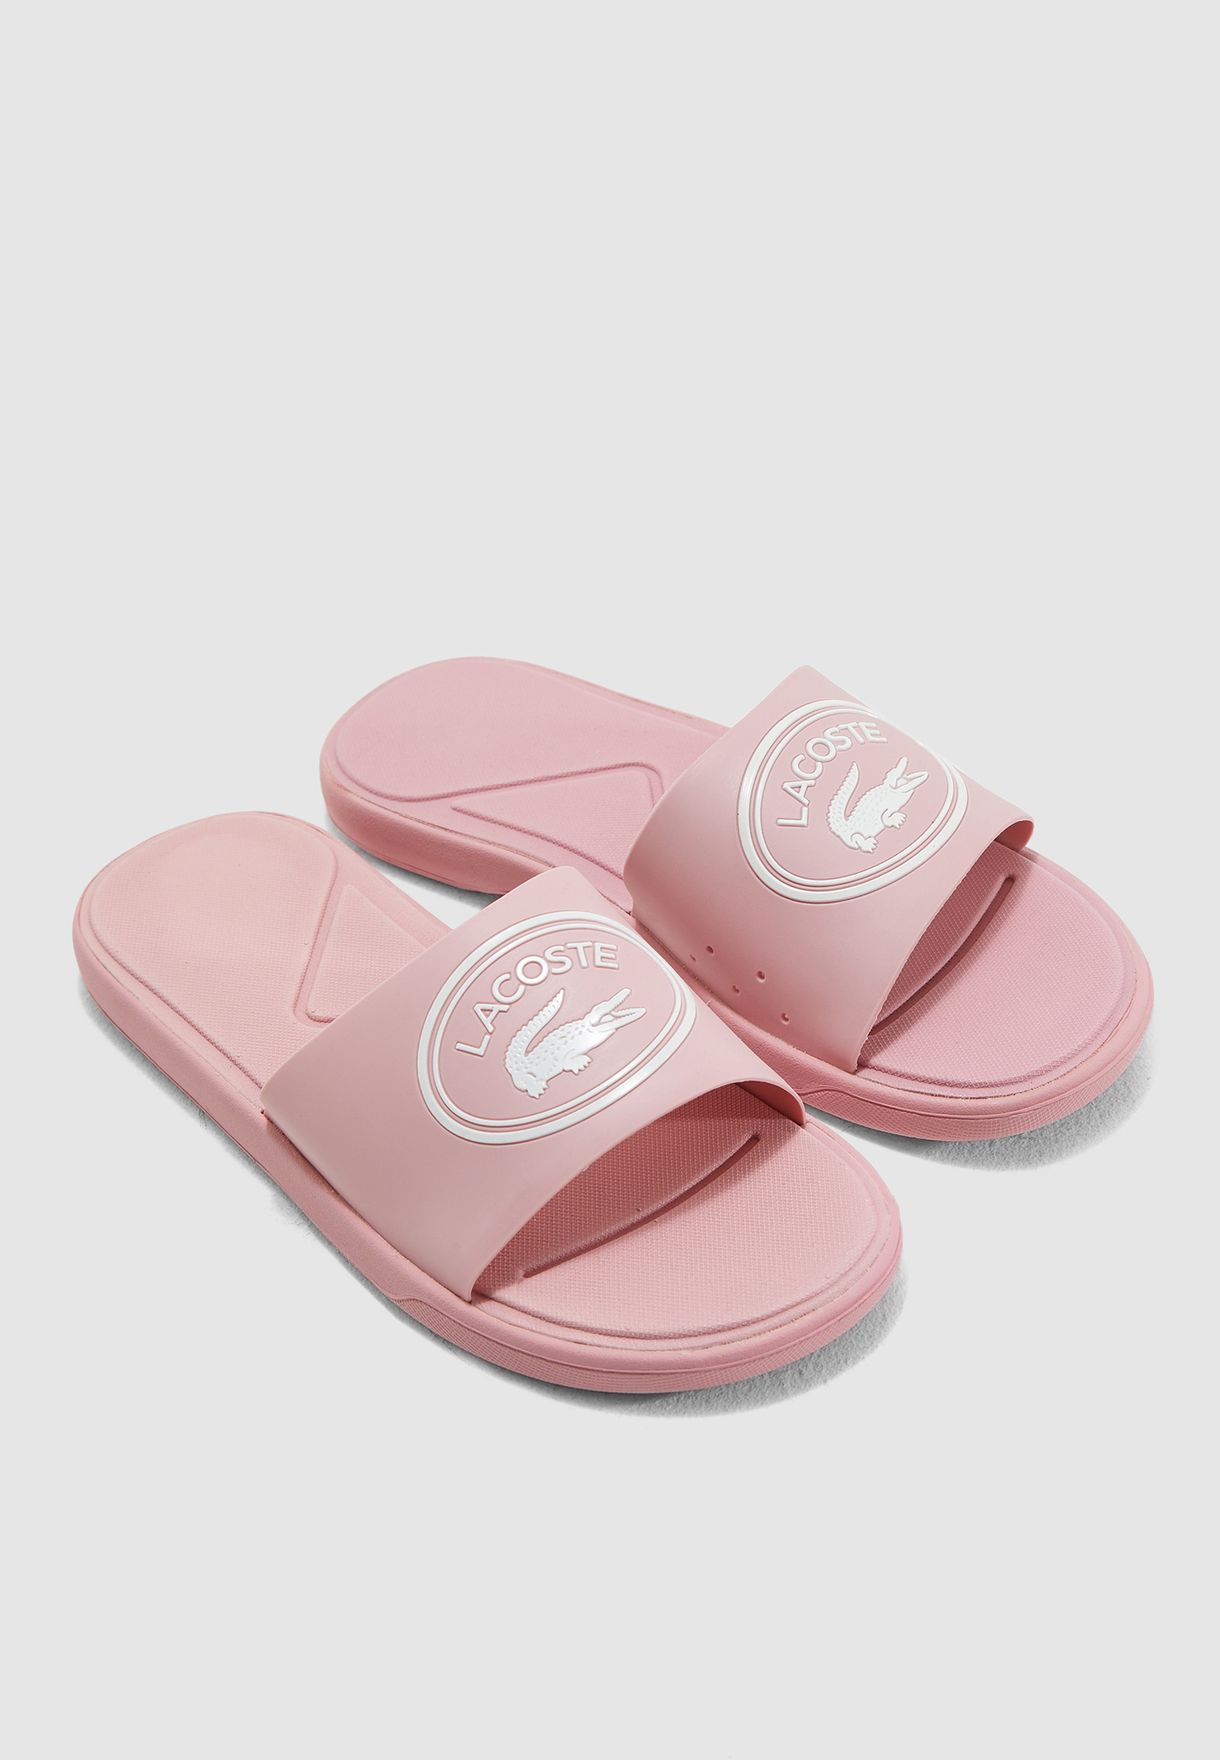 lacoste pink slides